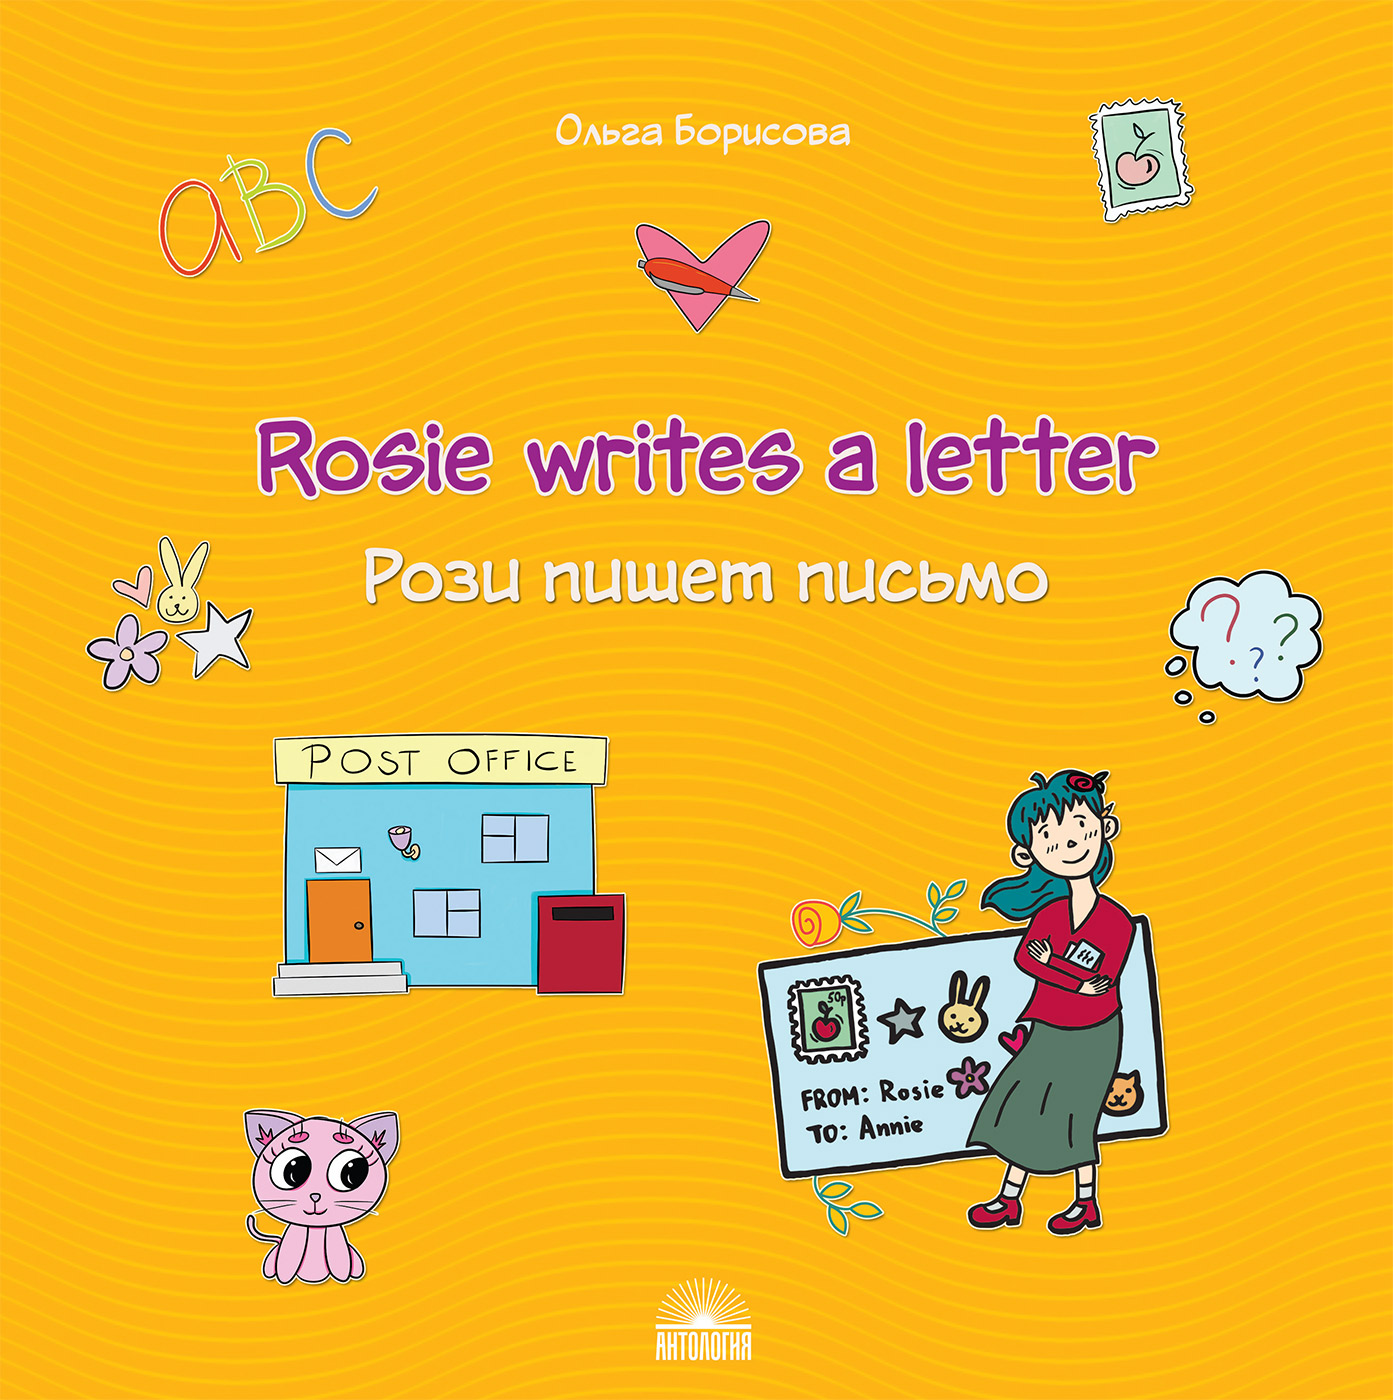 Рози пишет письмо (Rosie writes a letter). Учебное пособие